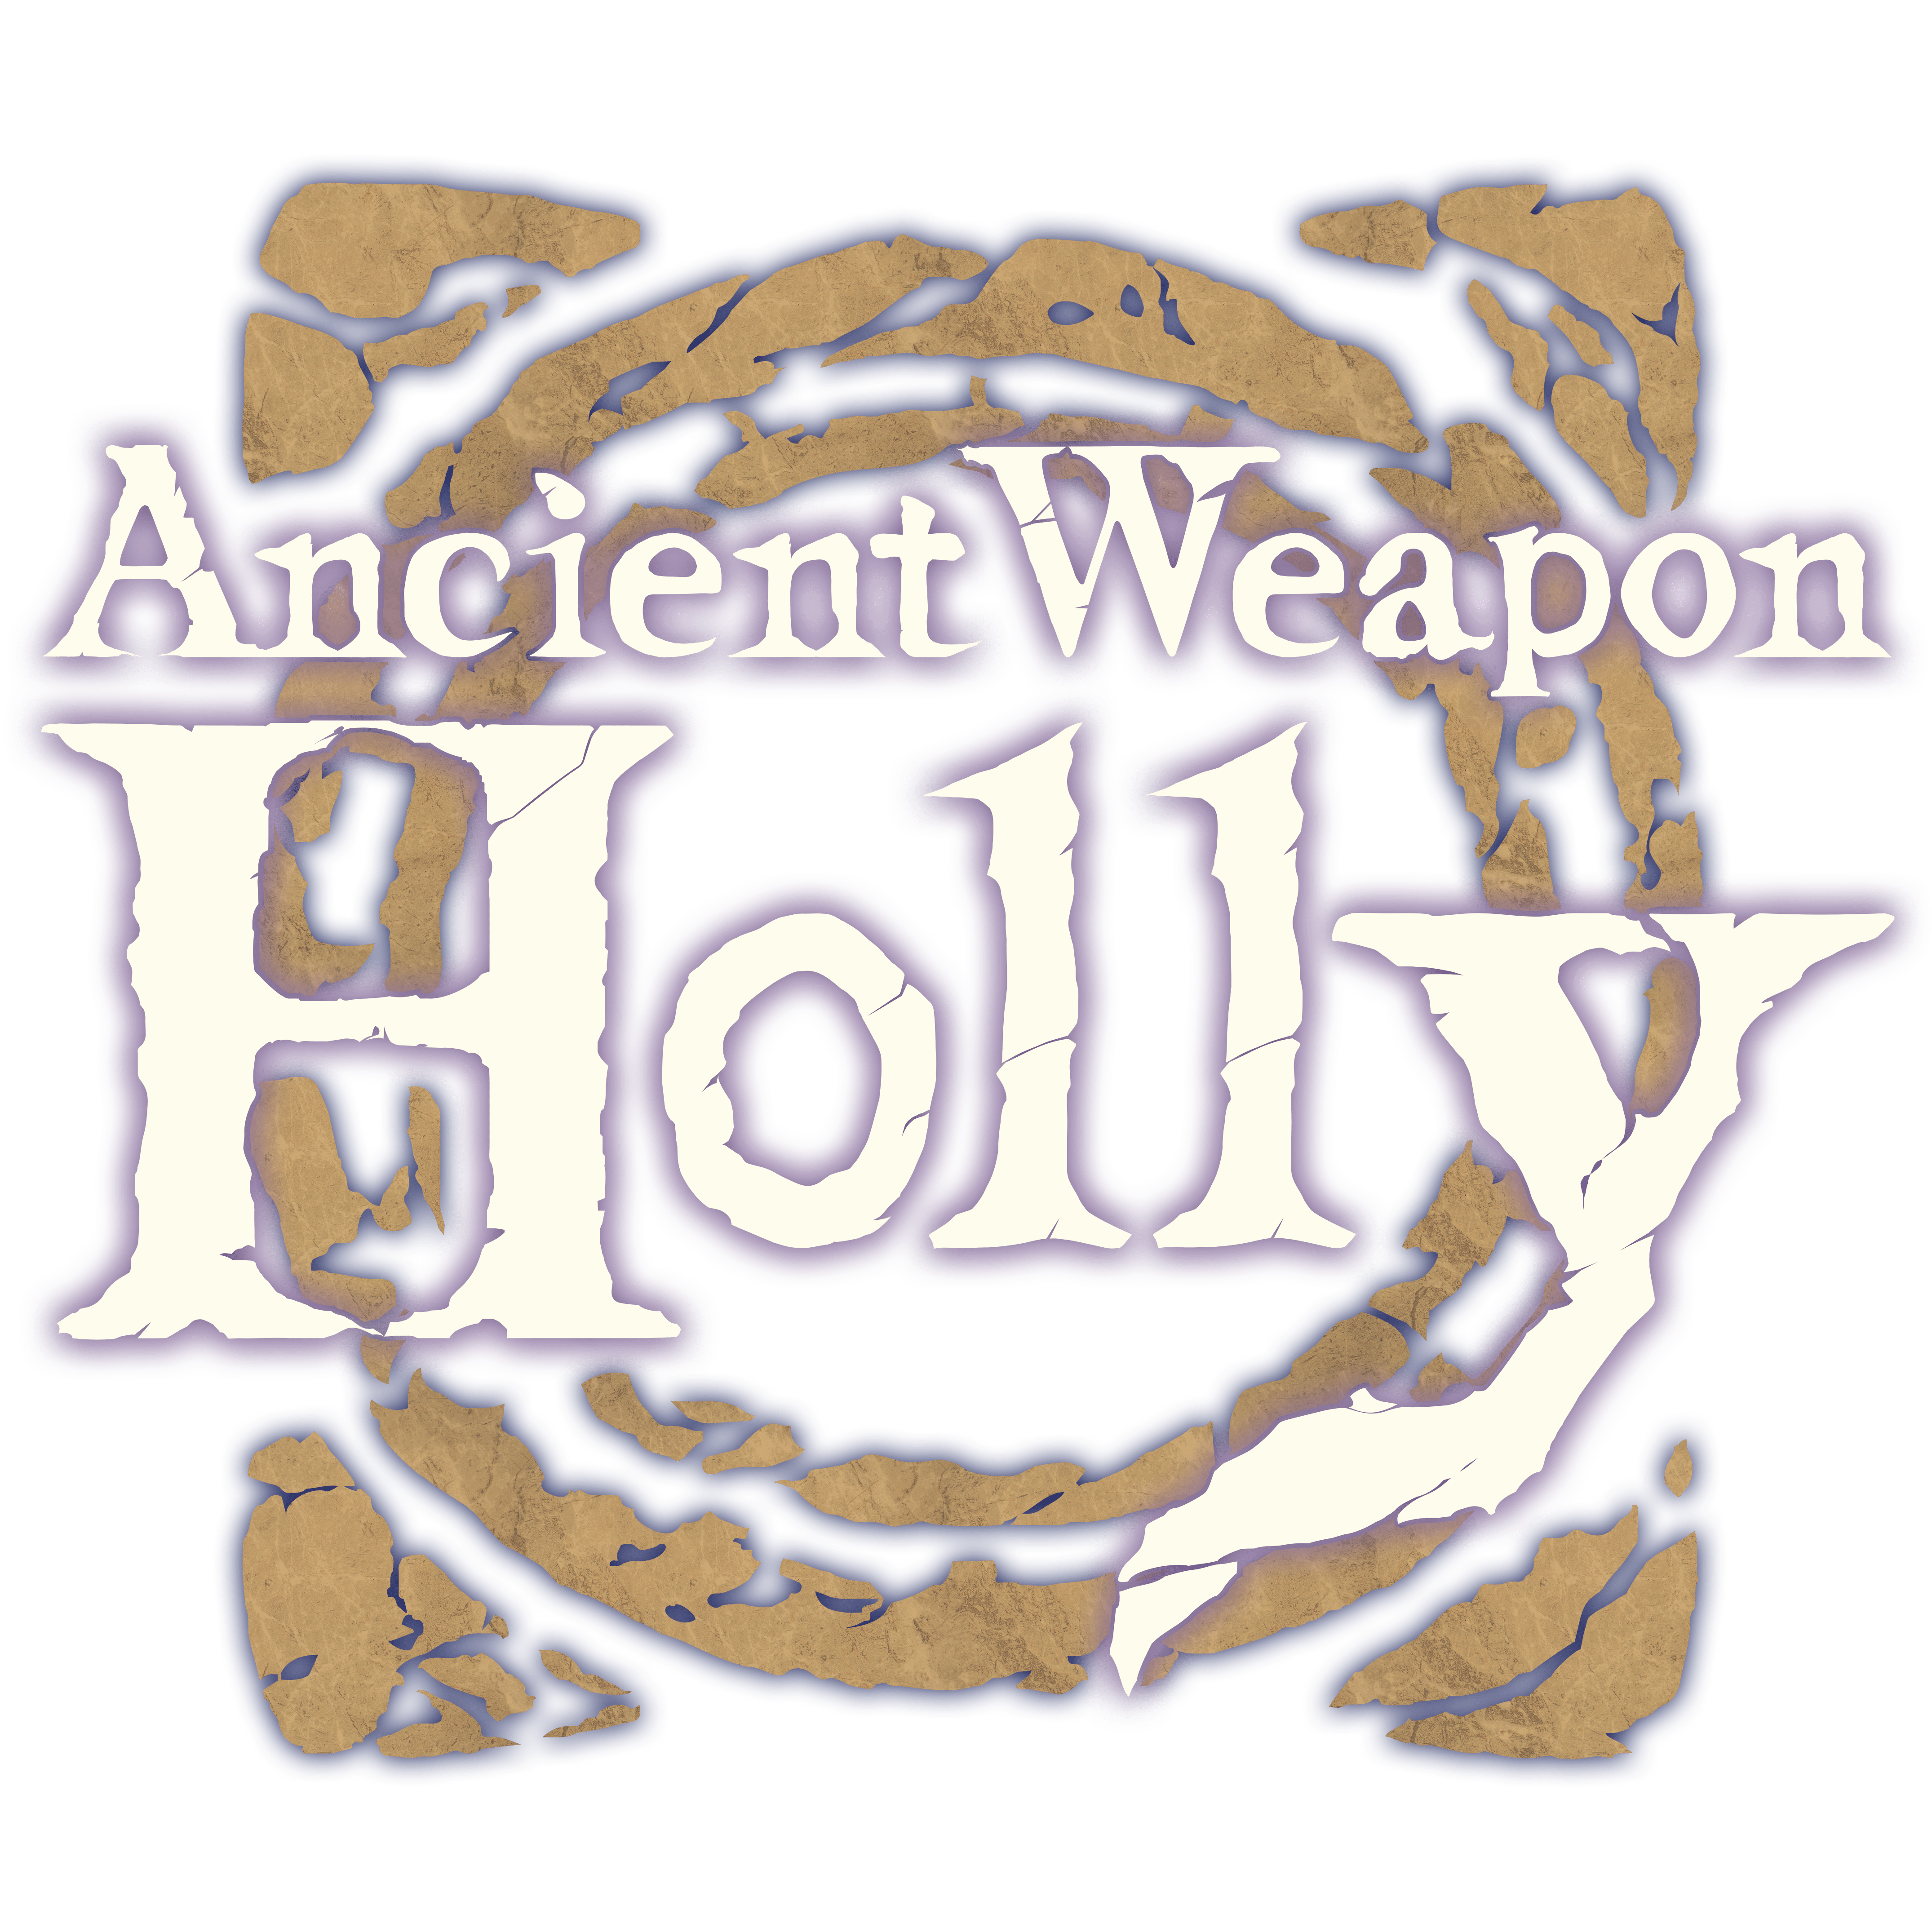 Ancient Weapon Holly, jogo de ação roguelike, vai chegar ao PS5 em 2024